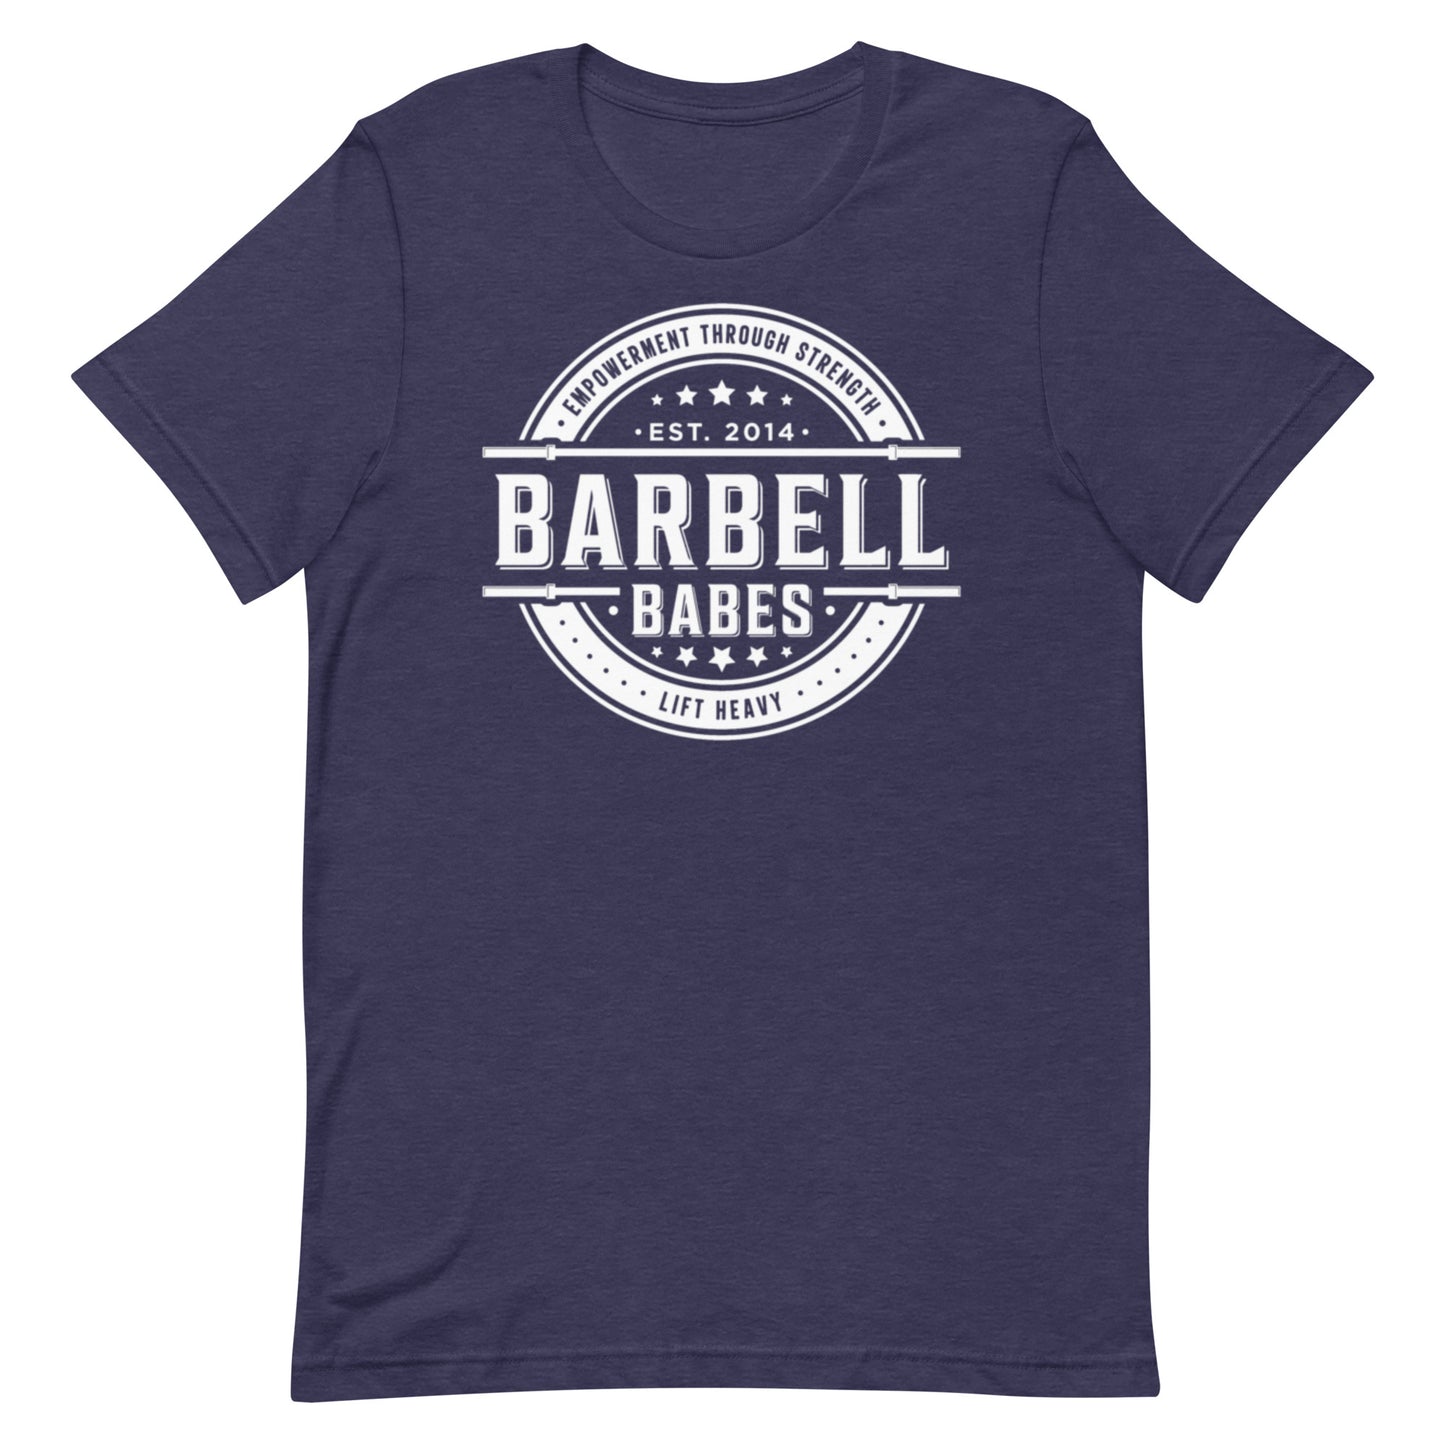 Barbell OG Classic Tee